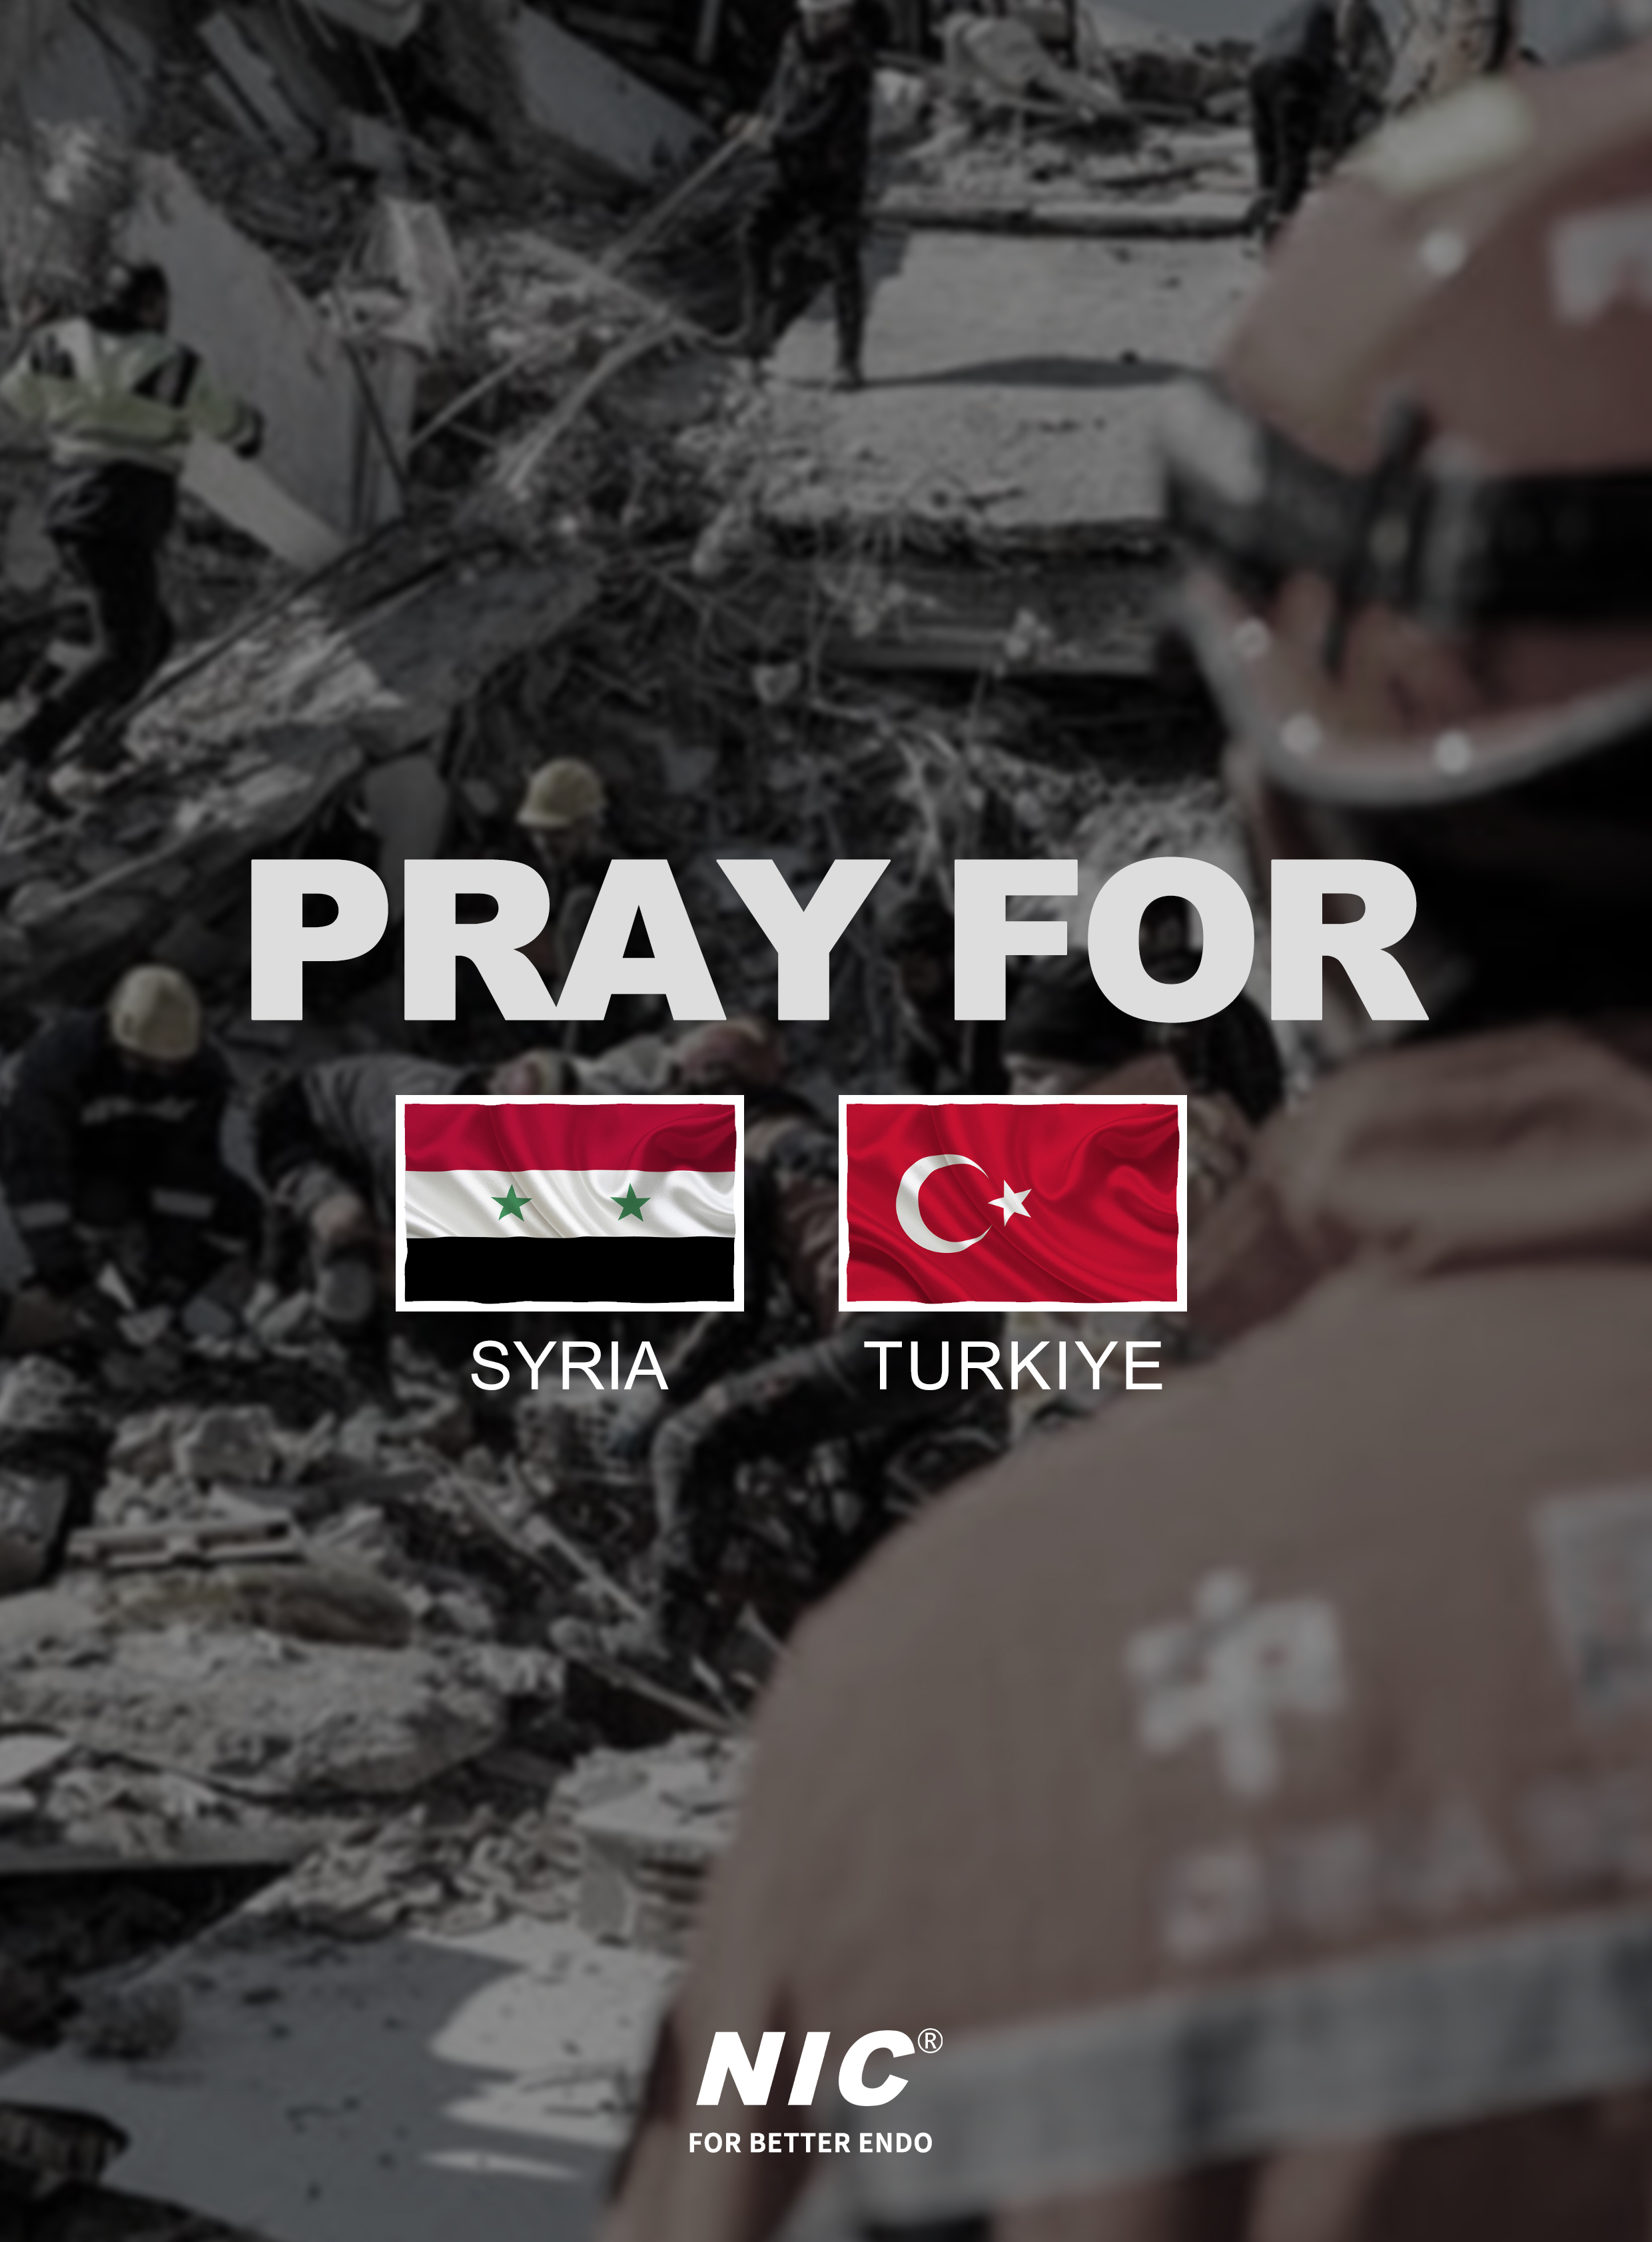 PRAY FOR SYRIA AND TURKIYE